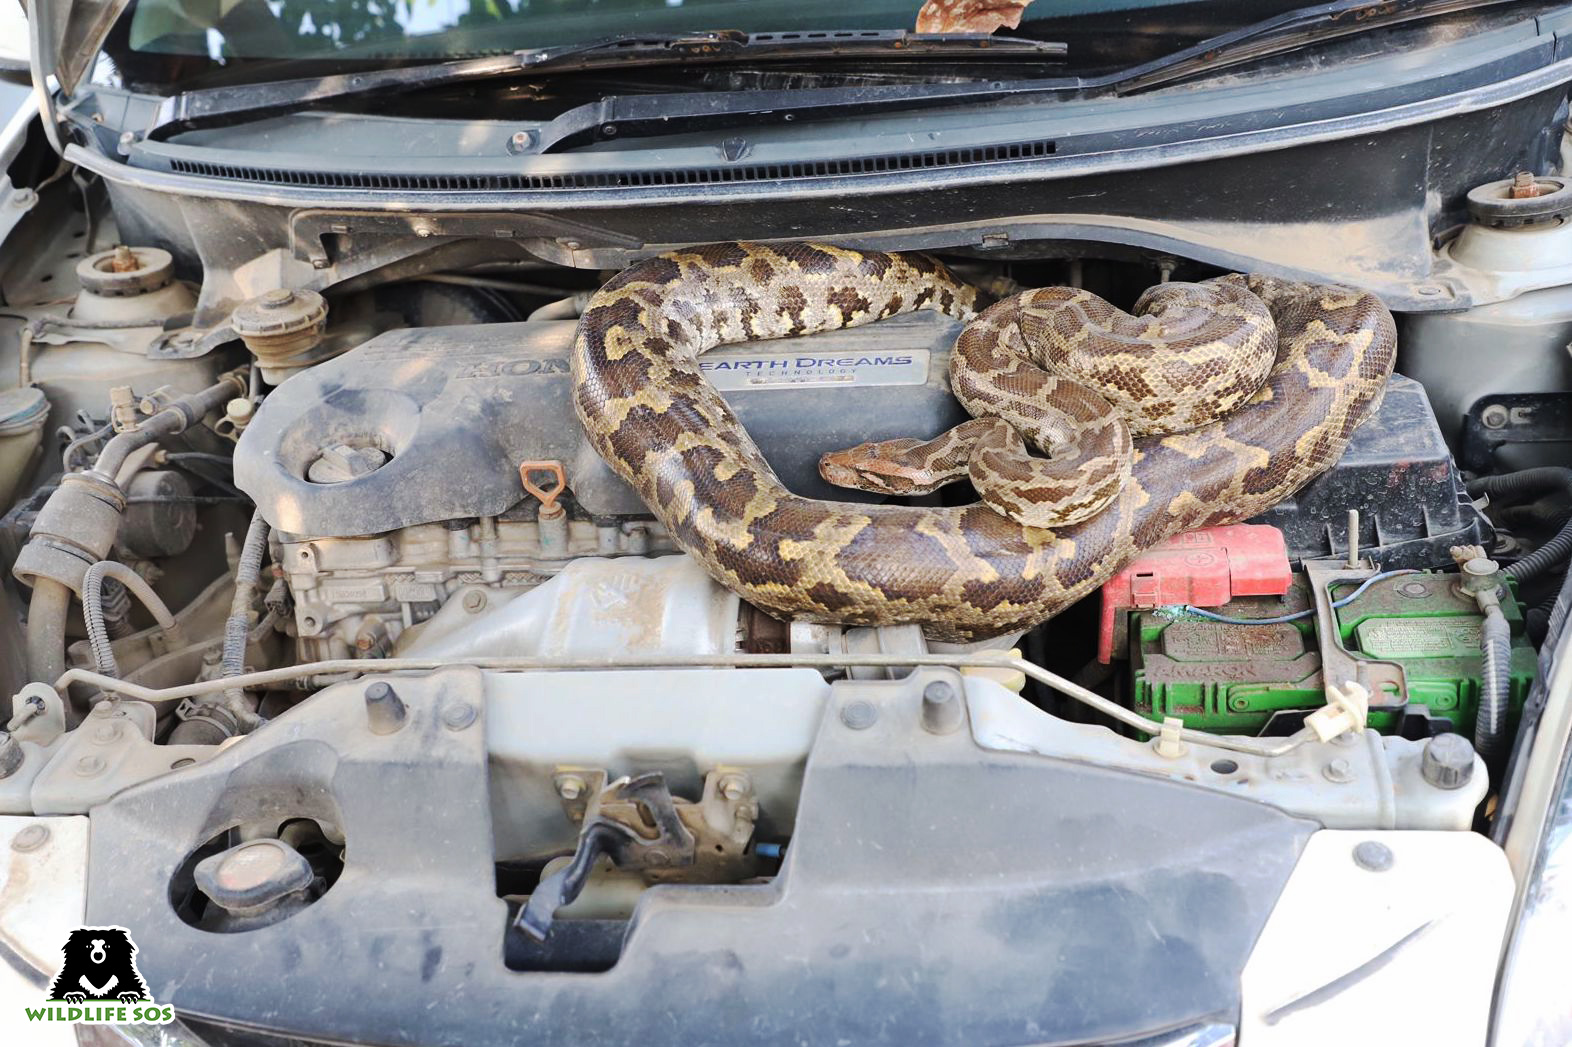 Python found inside the car